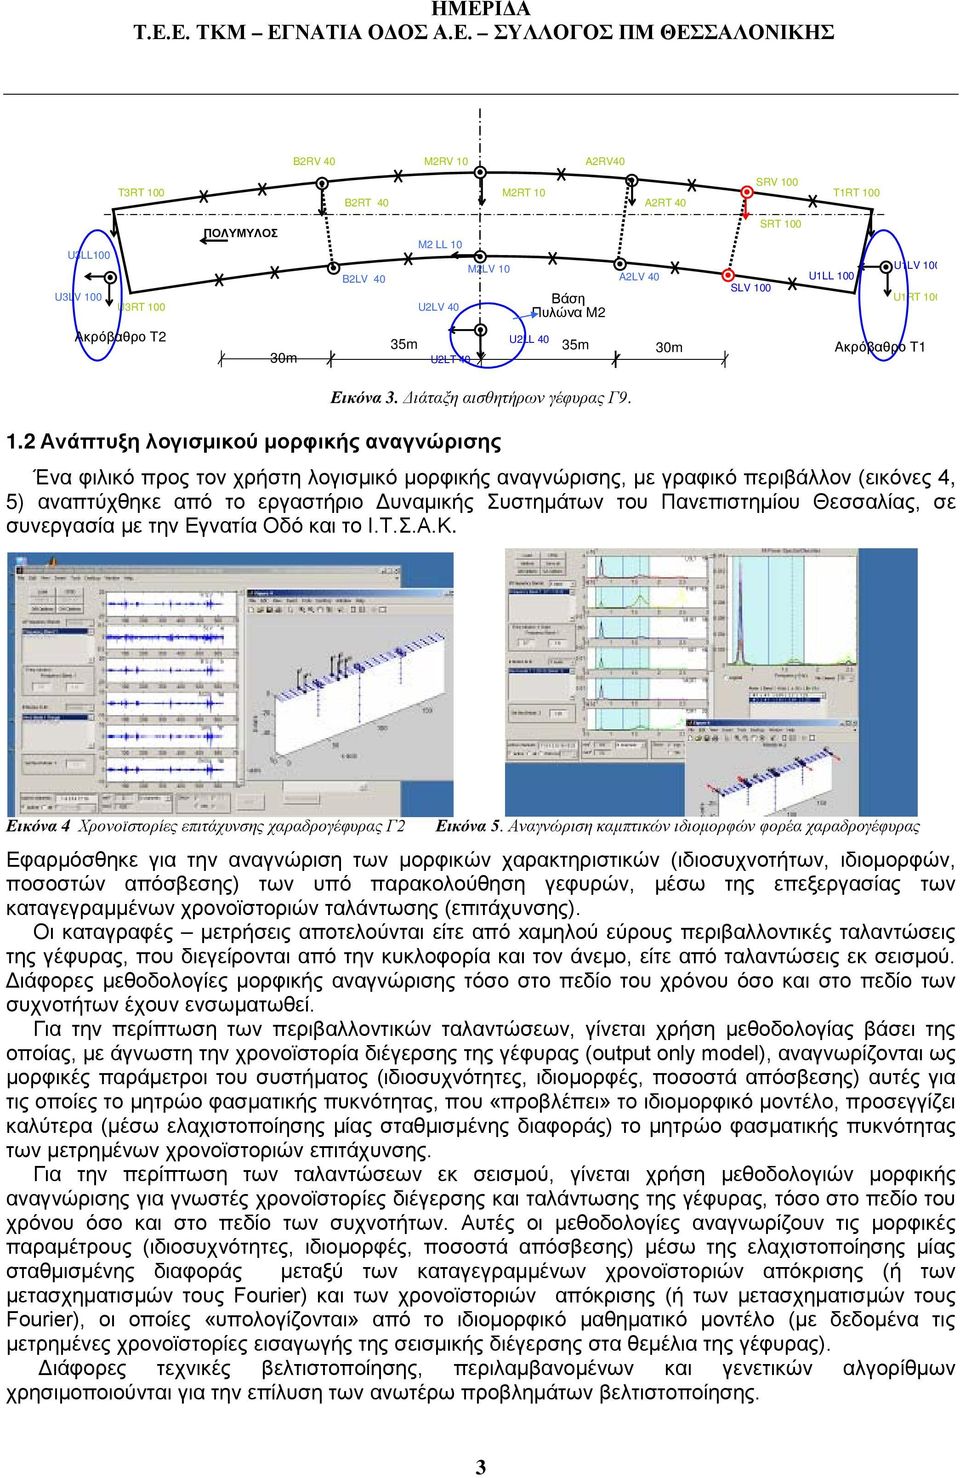 2 Ανάπτυξη λογισμικού μορφικής αναγνώρισης Ένα φιλικό προς τον χρήστη λογισμικό μορφικής αναγνώρισης, με γραφικό περιβάλλον (εικόνες 4, 5) αναπτύχθηκε από το εργαστήριο Δυναμικής Συστημάτων του